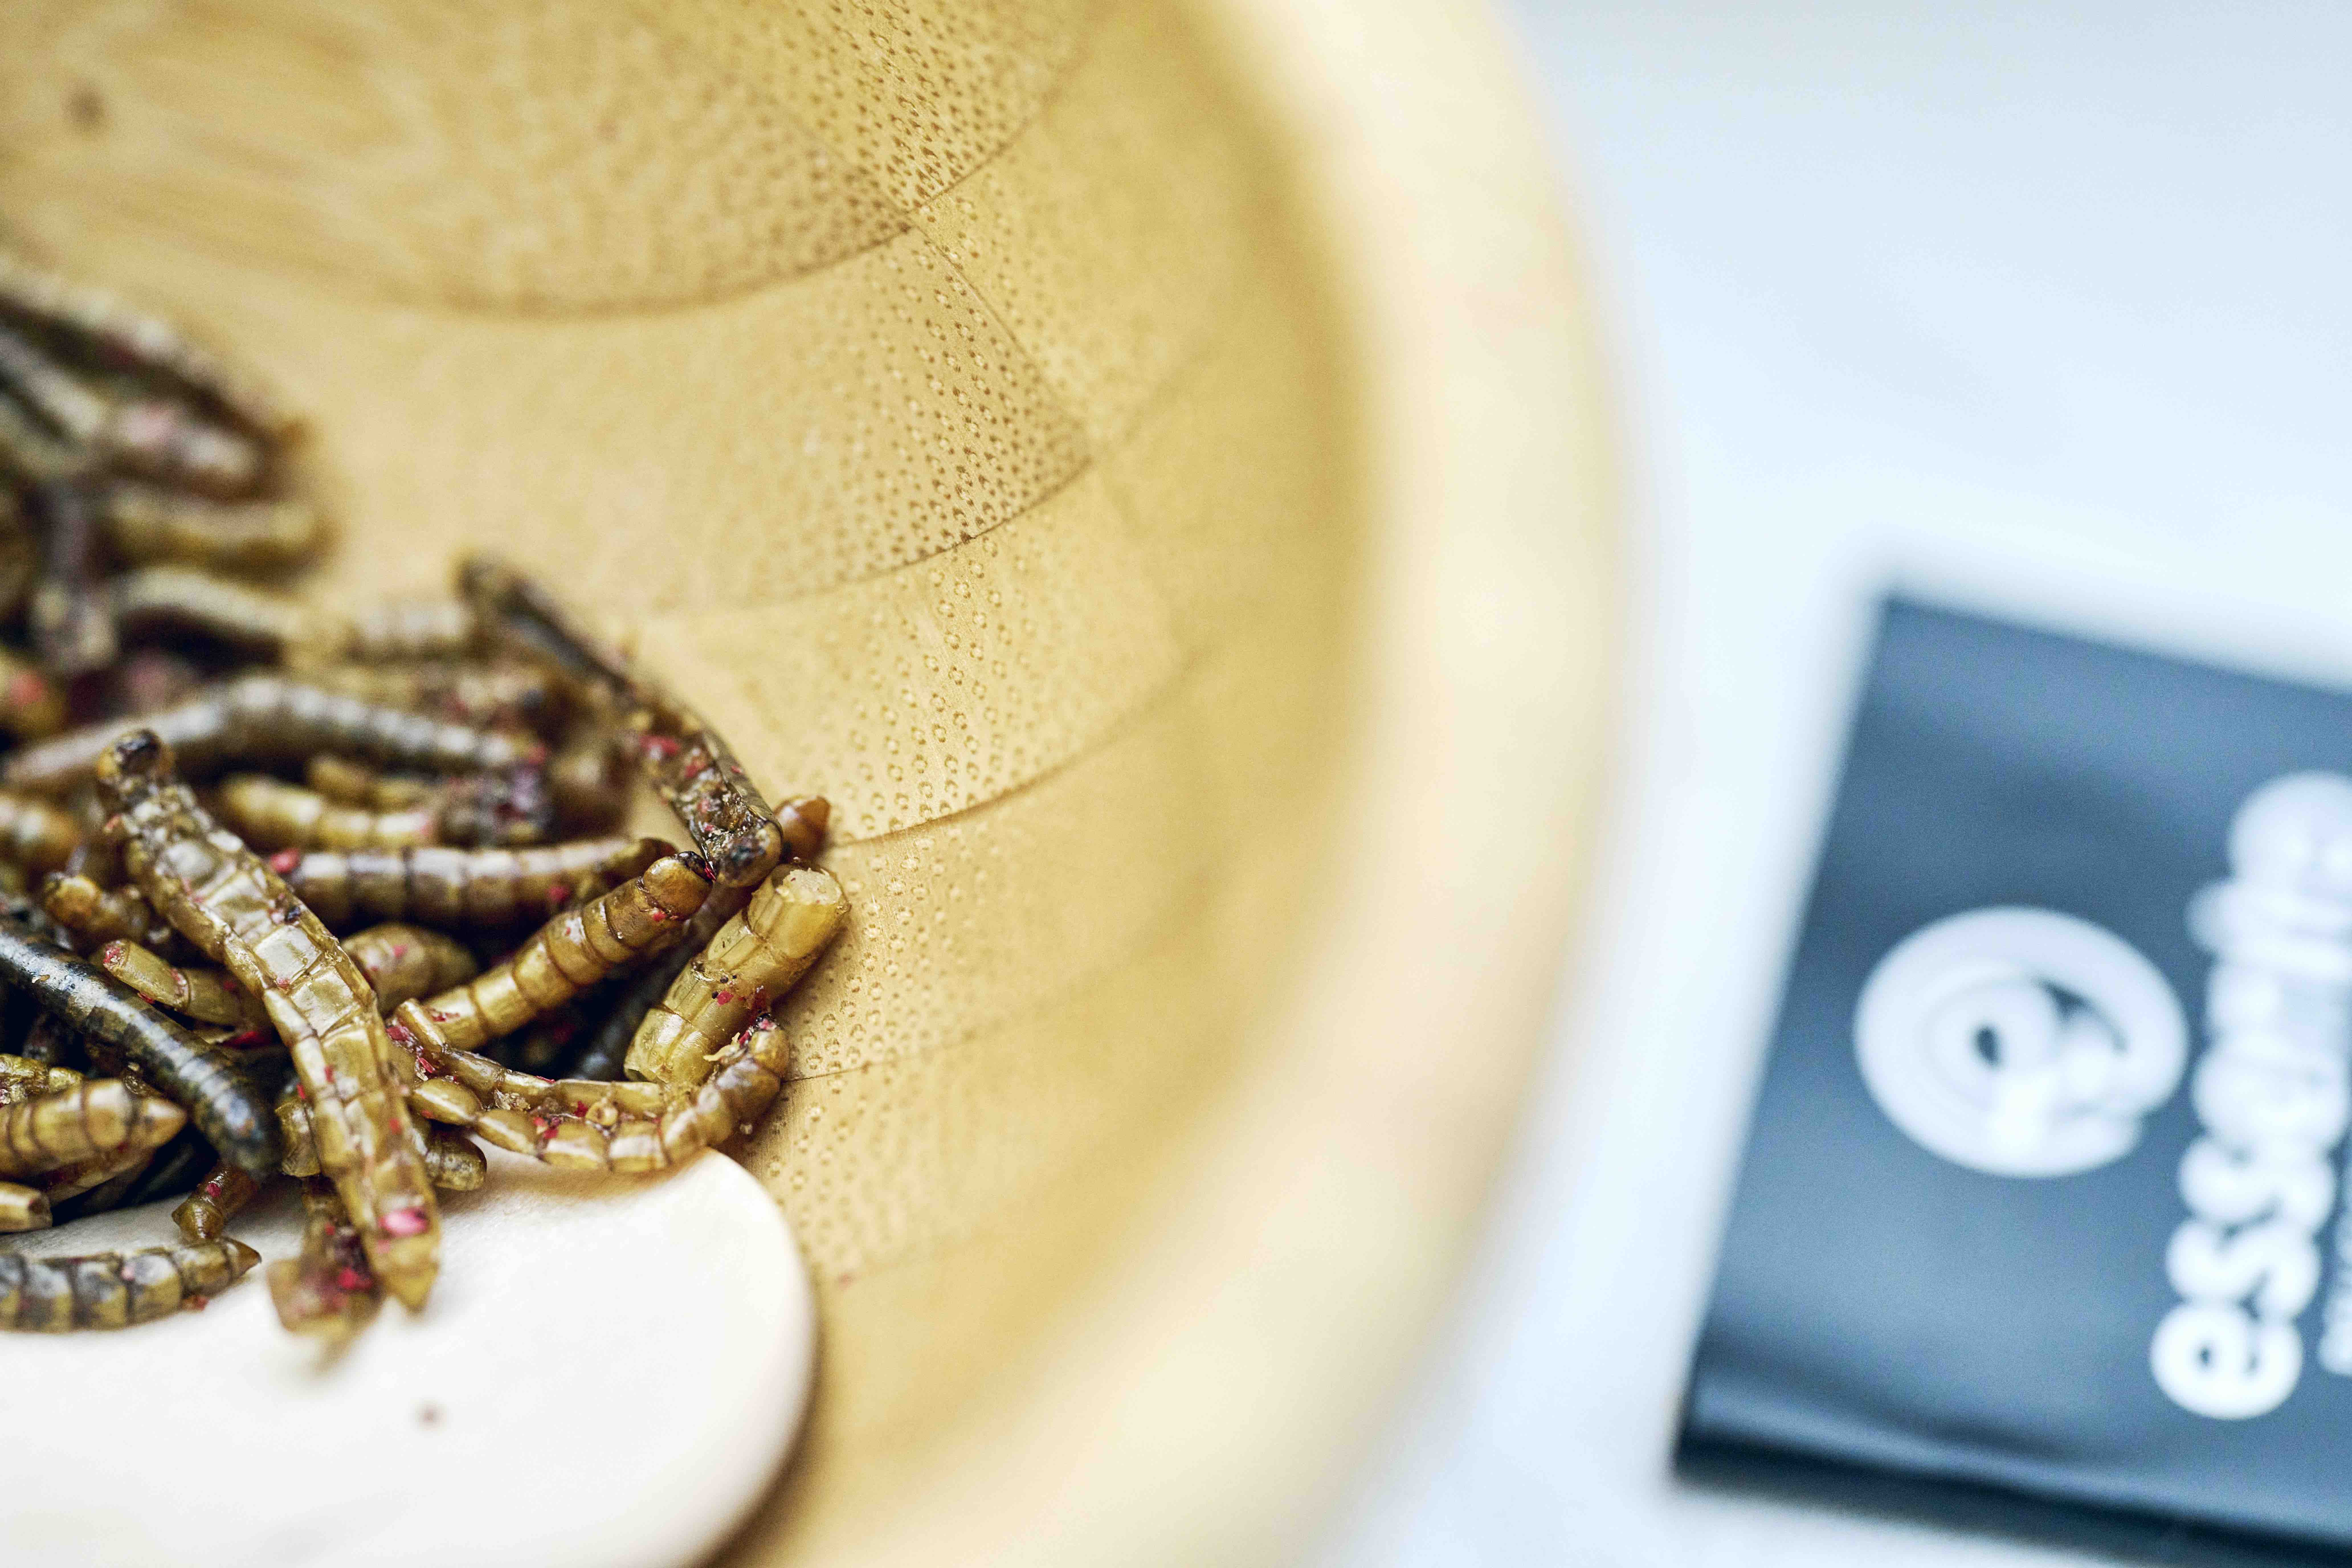 Auf einem weissen Tischtuch steht eine Schale mit getrockneten Mehlwürmern, die als Snack genossen werden können.